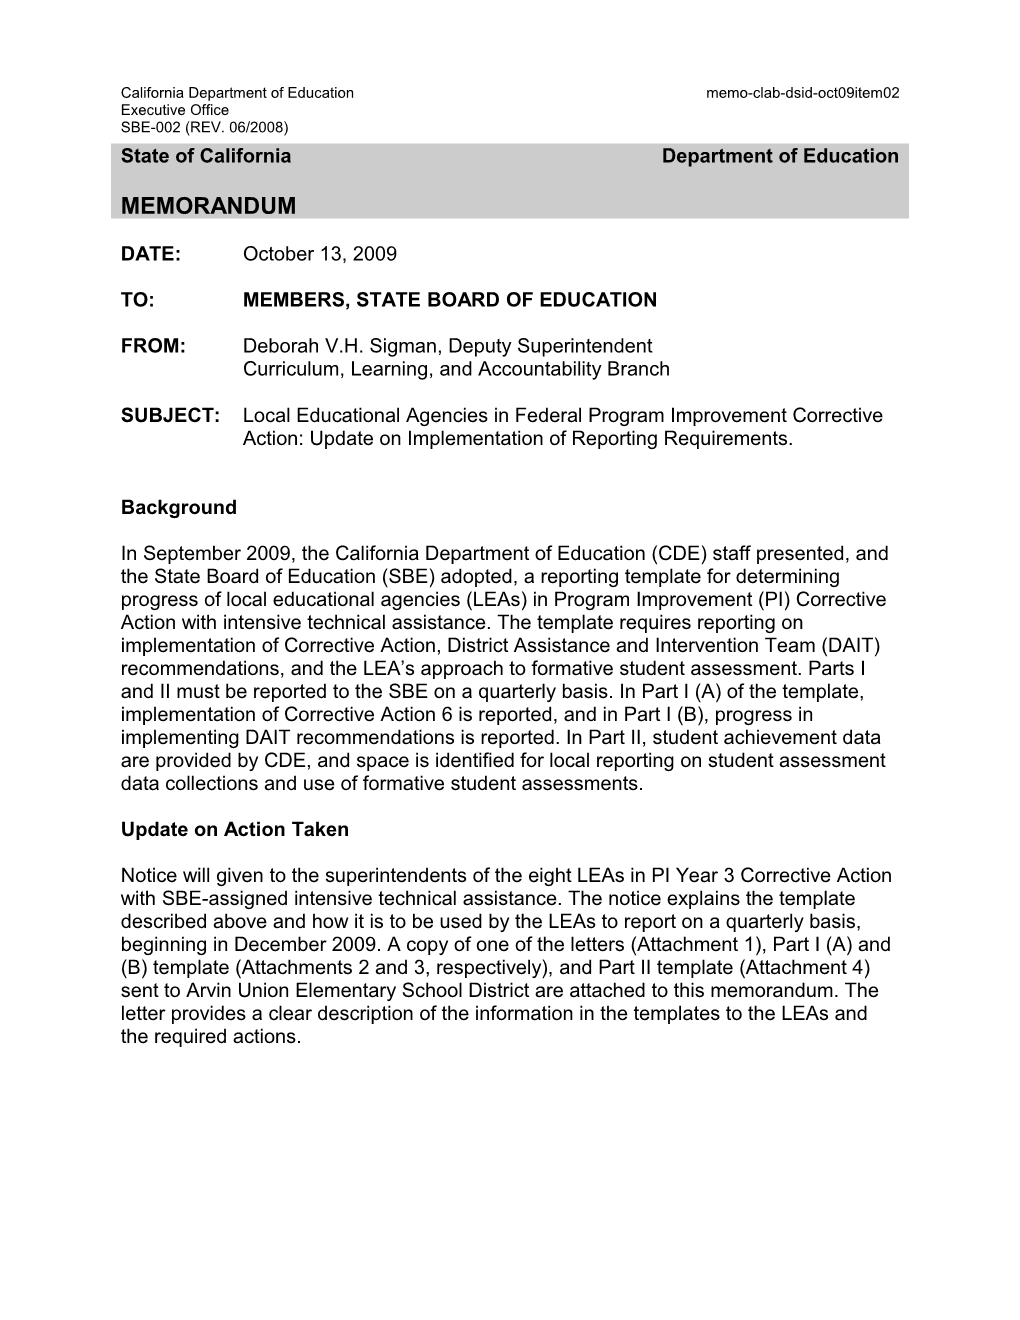 October 2009 Memorandum Item 02 - Information Memorandum (CA State Board of Education)